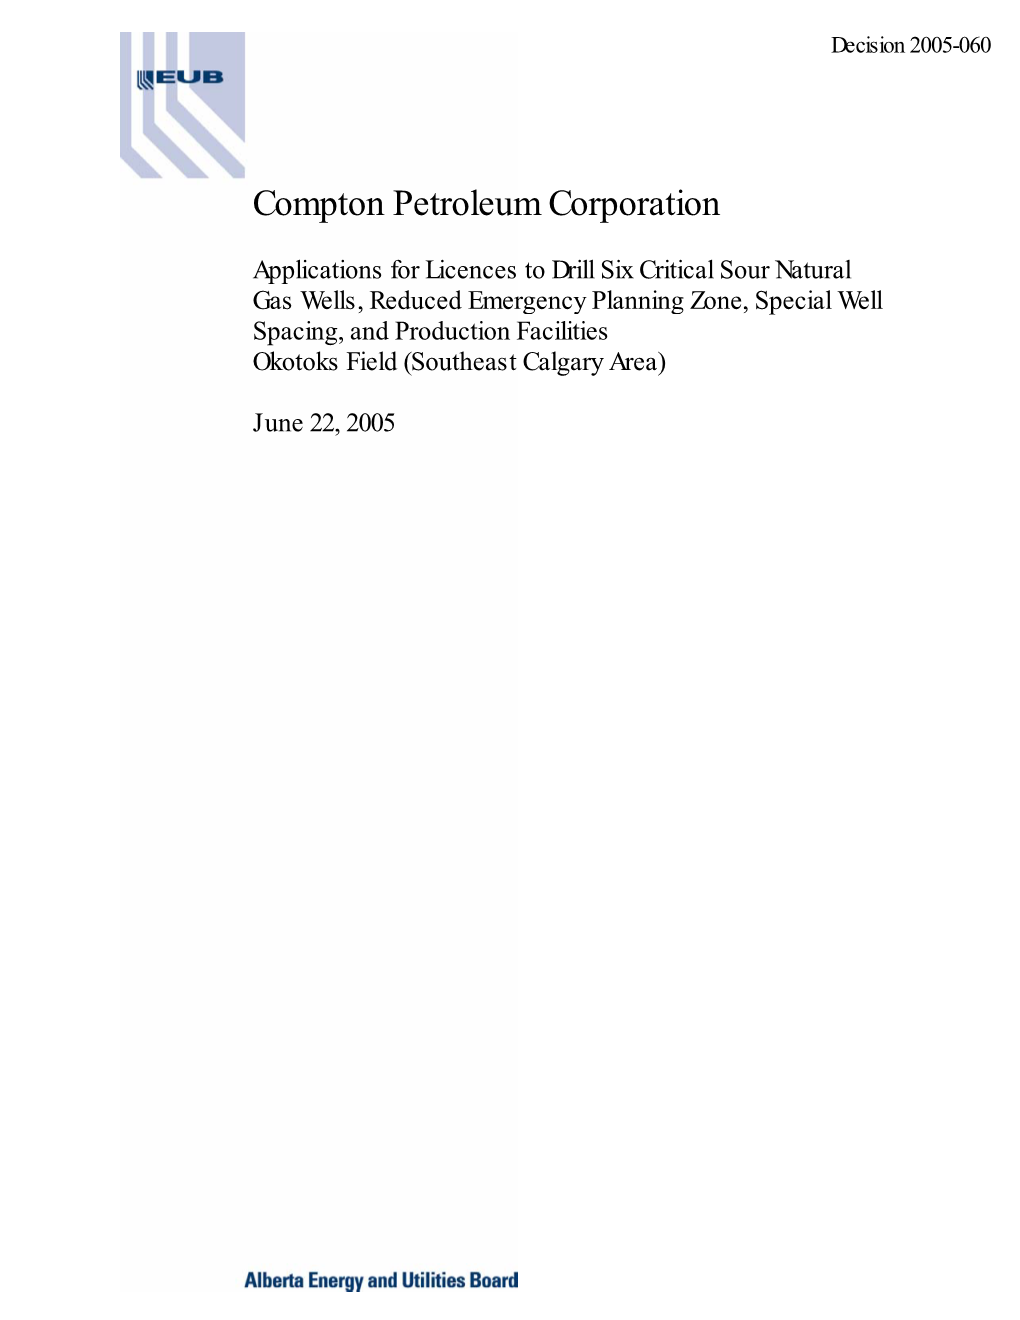 Decision 2005-060: Compton Petroleum